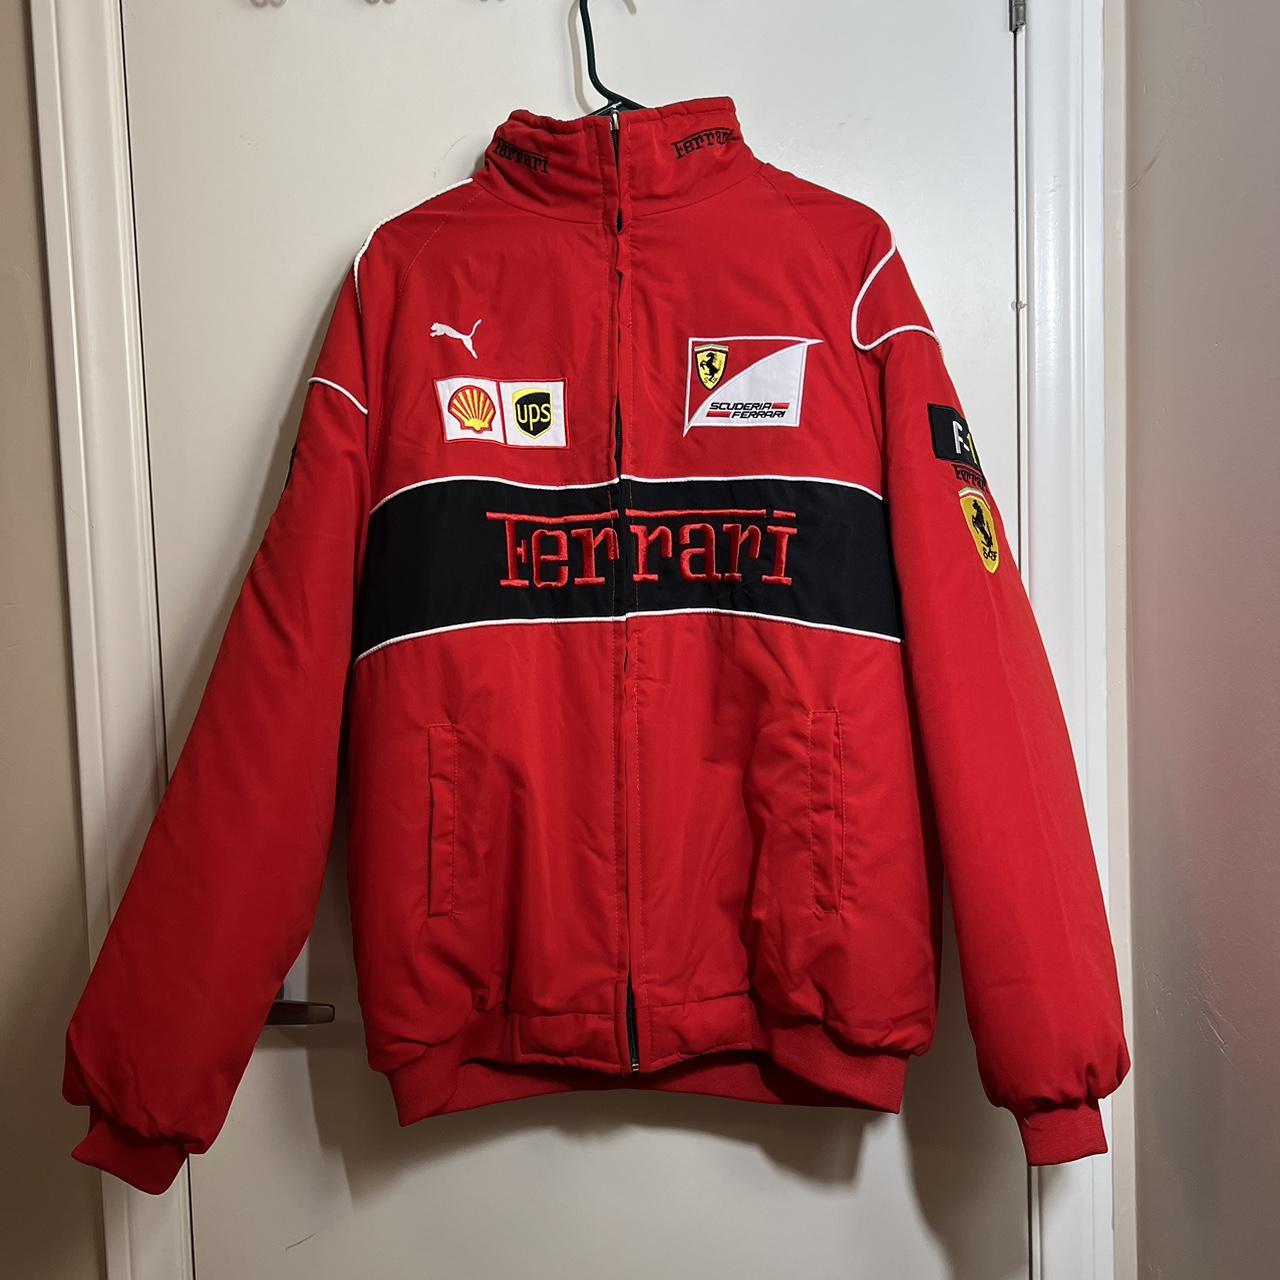 Ferrari F1 Vintage Style Jacket Size: Men’s XL... - Depop